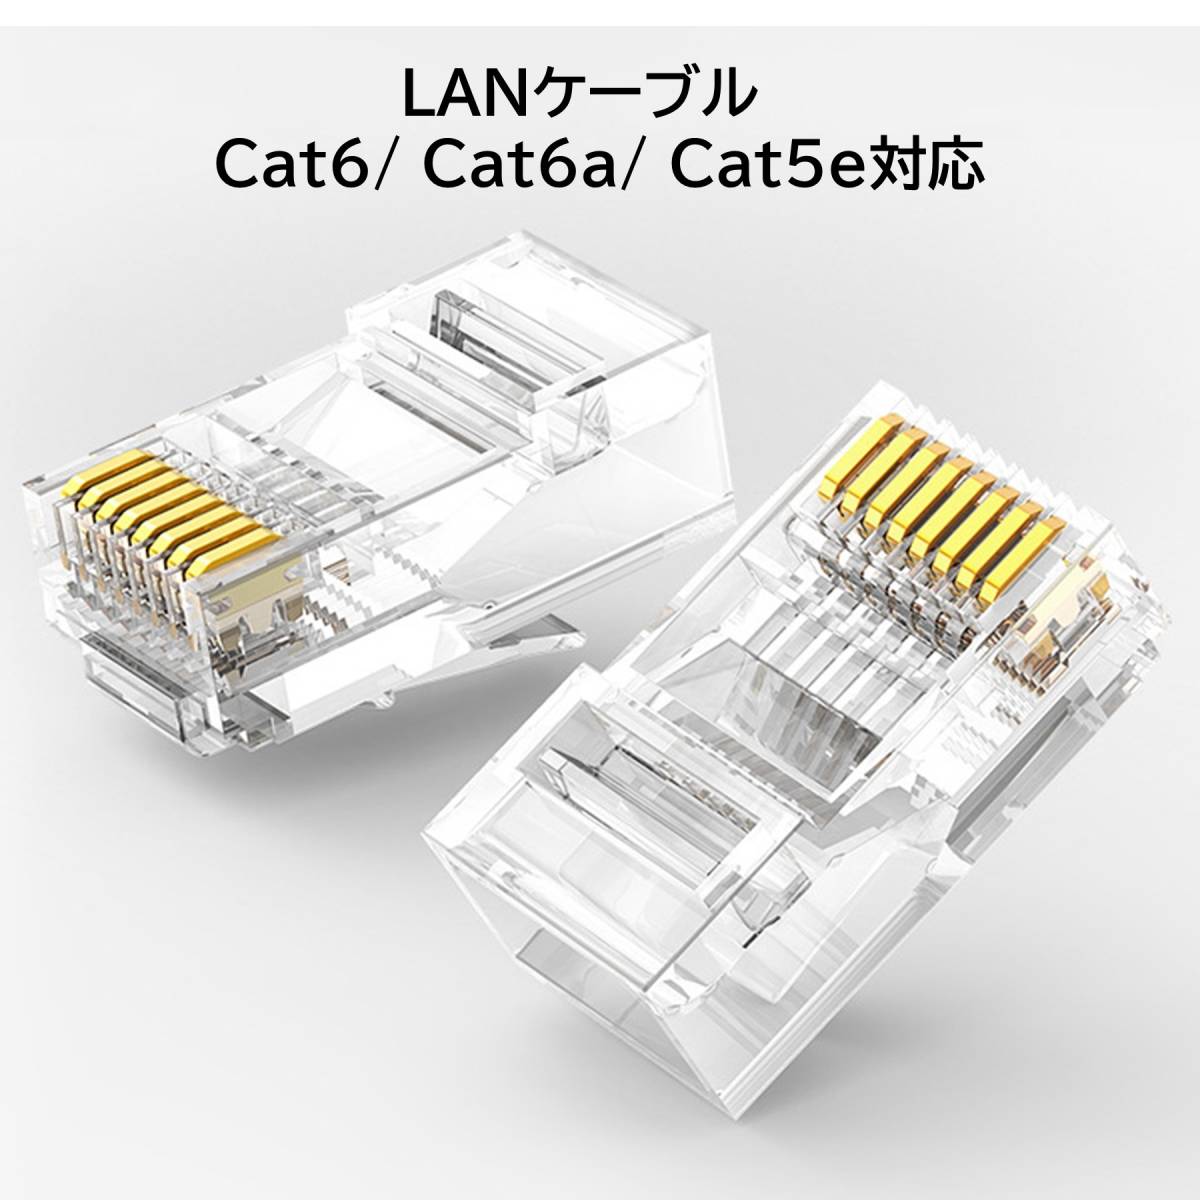  LANケーブル コネクタ 100個入り lanコネクタ RJ45 Cat6 Cat5e対応 非貫通型 簡単取付 爪折れにくい 単線ヨリ線対応 100個 (100個入り)_画像2